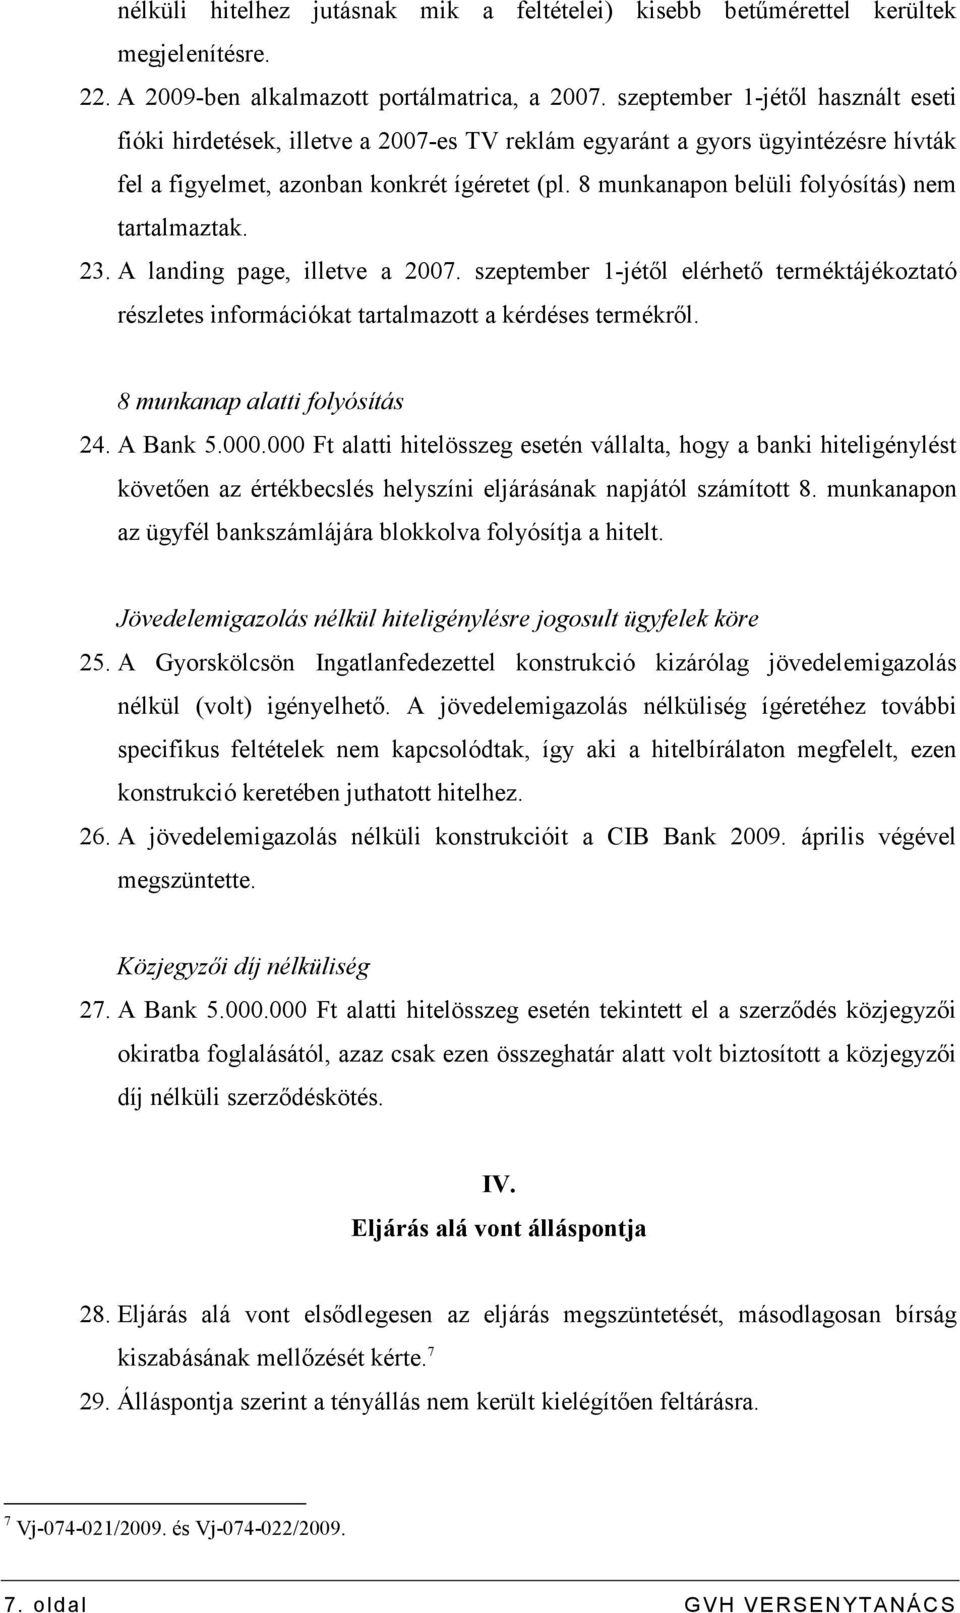 8 munkanapon belüli folyósítás) nem tartalmaztak. 23. A landing page, illetve a 2007. szeptember 1-jétıl elérhetı terméktájékoztató részletes információkat tartalmazott a kérdéses termékrıl.